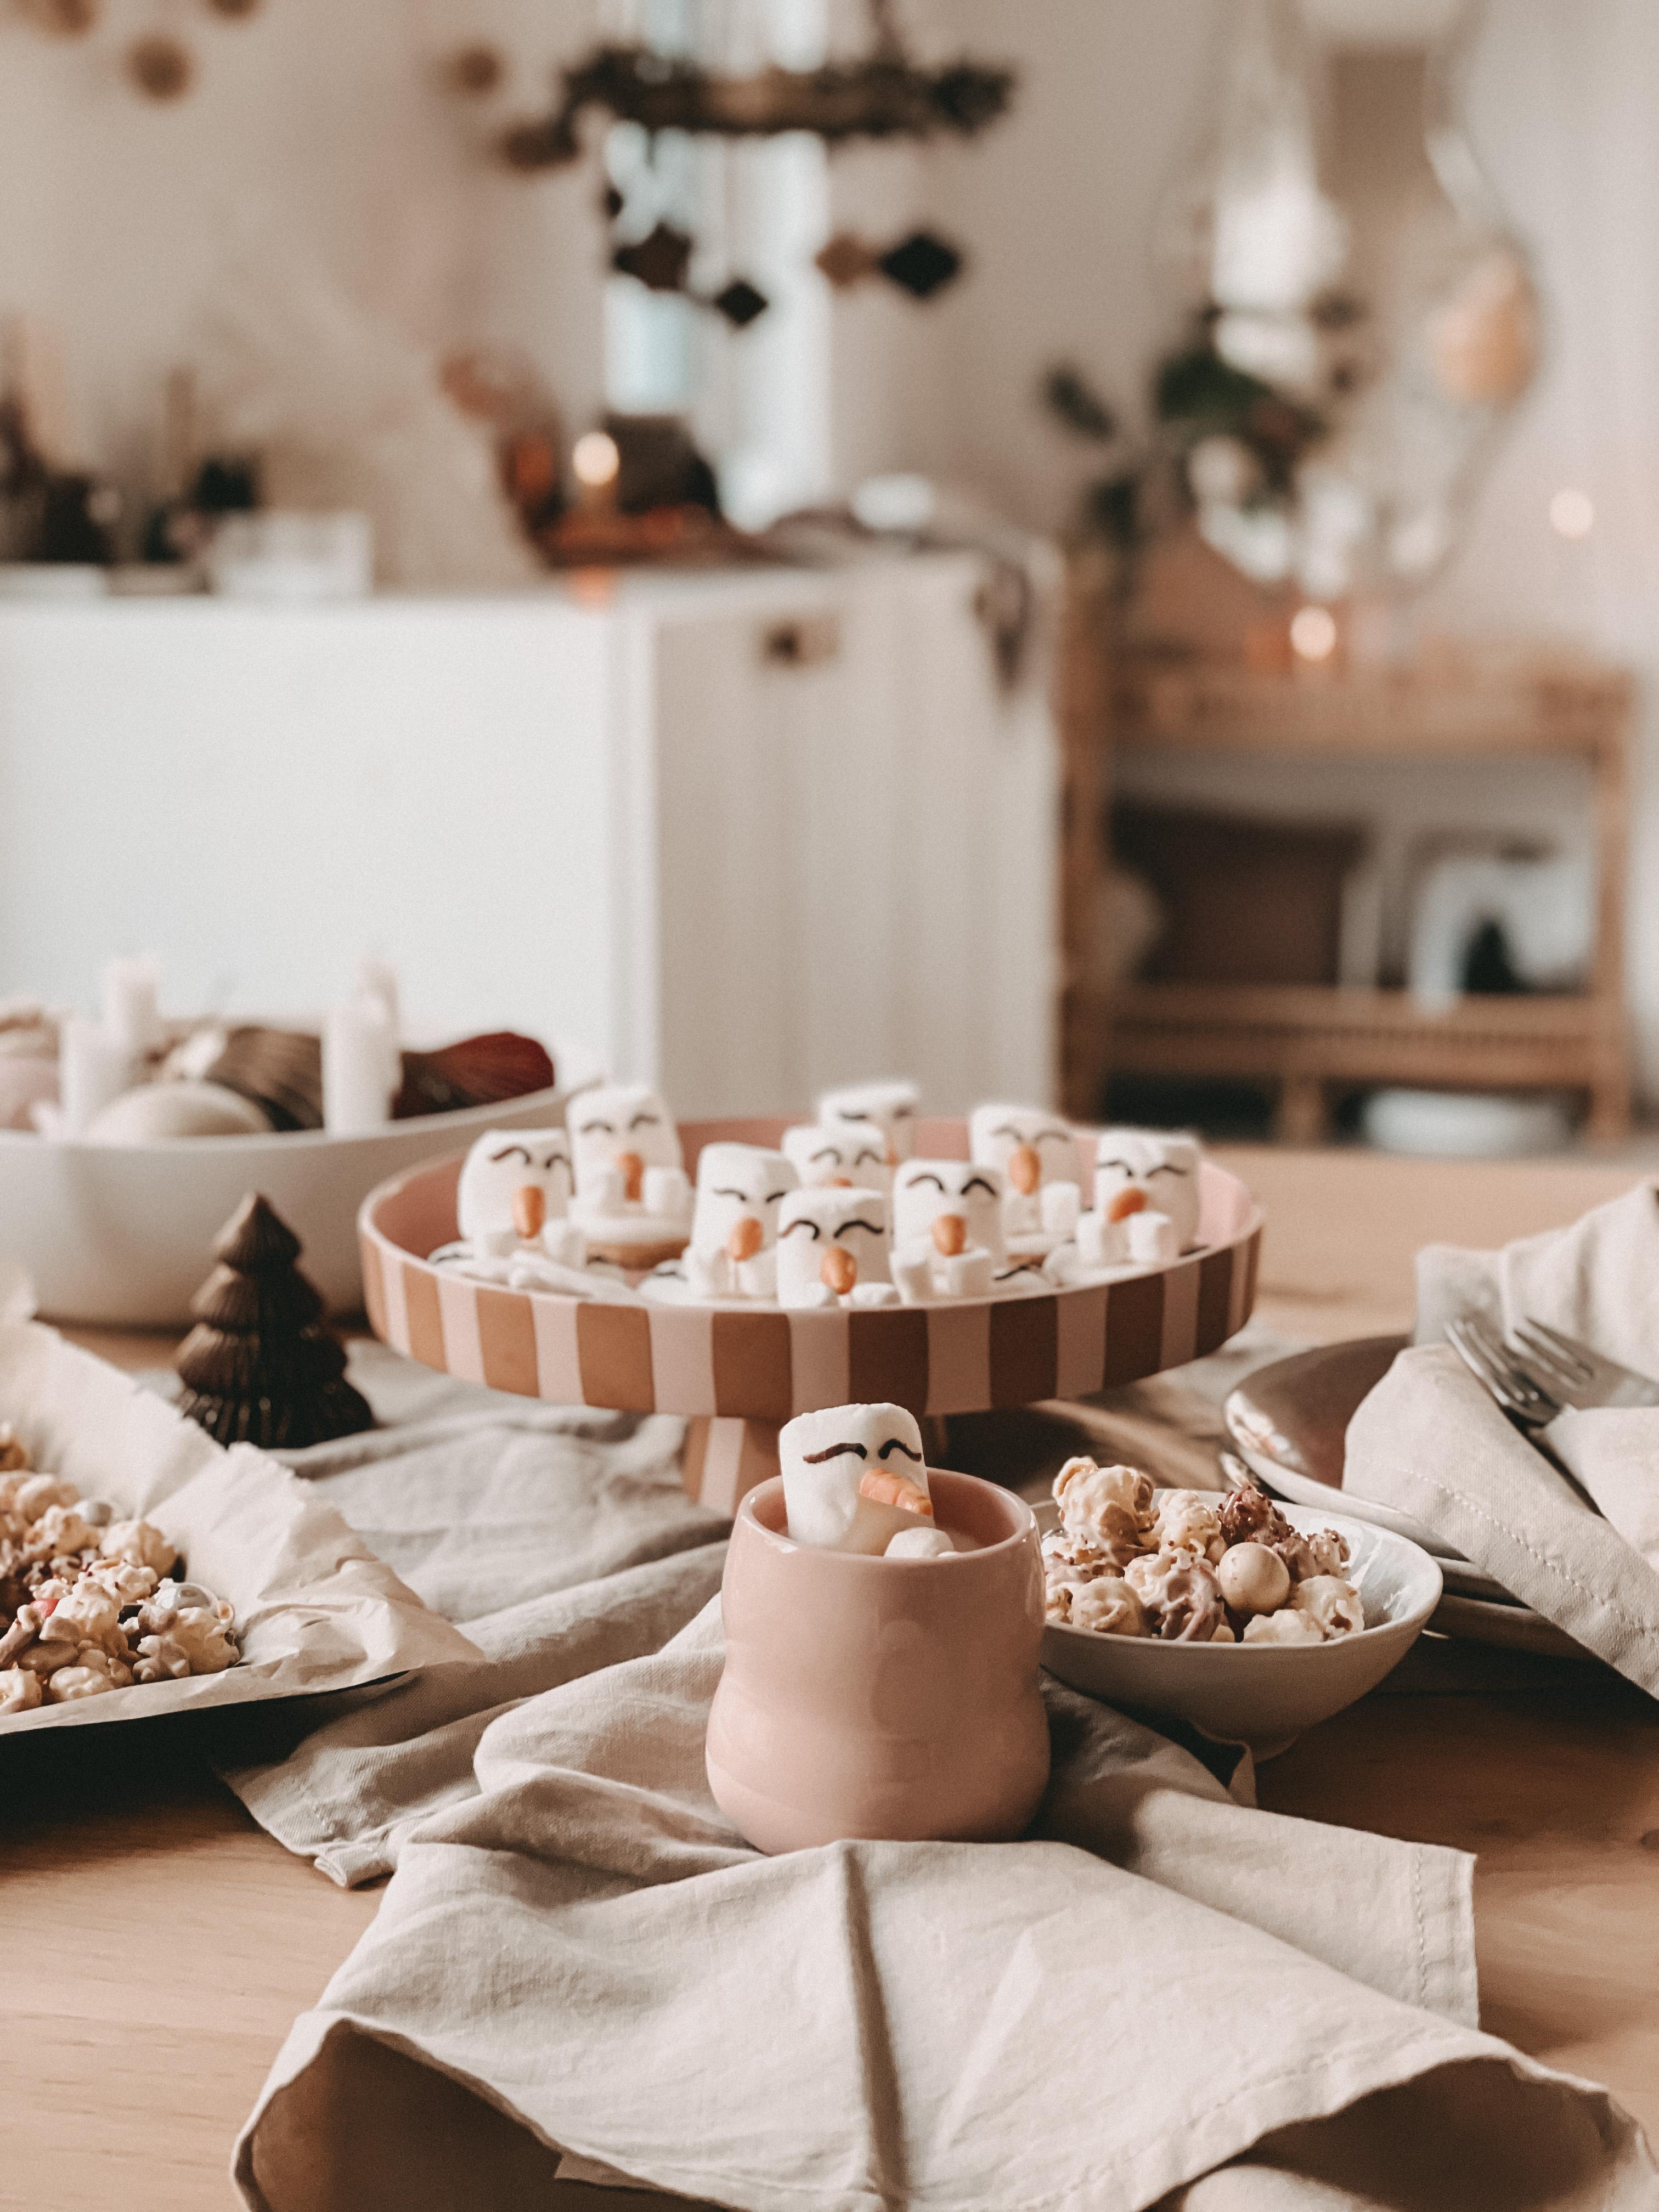 Olafkekse & Christmascrunch als kleine geschenke aus der Küche ⭐️
#geschenkeausderküche 